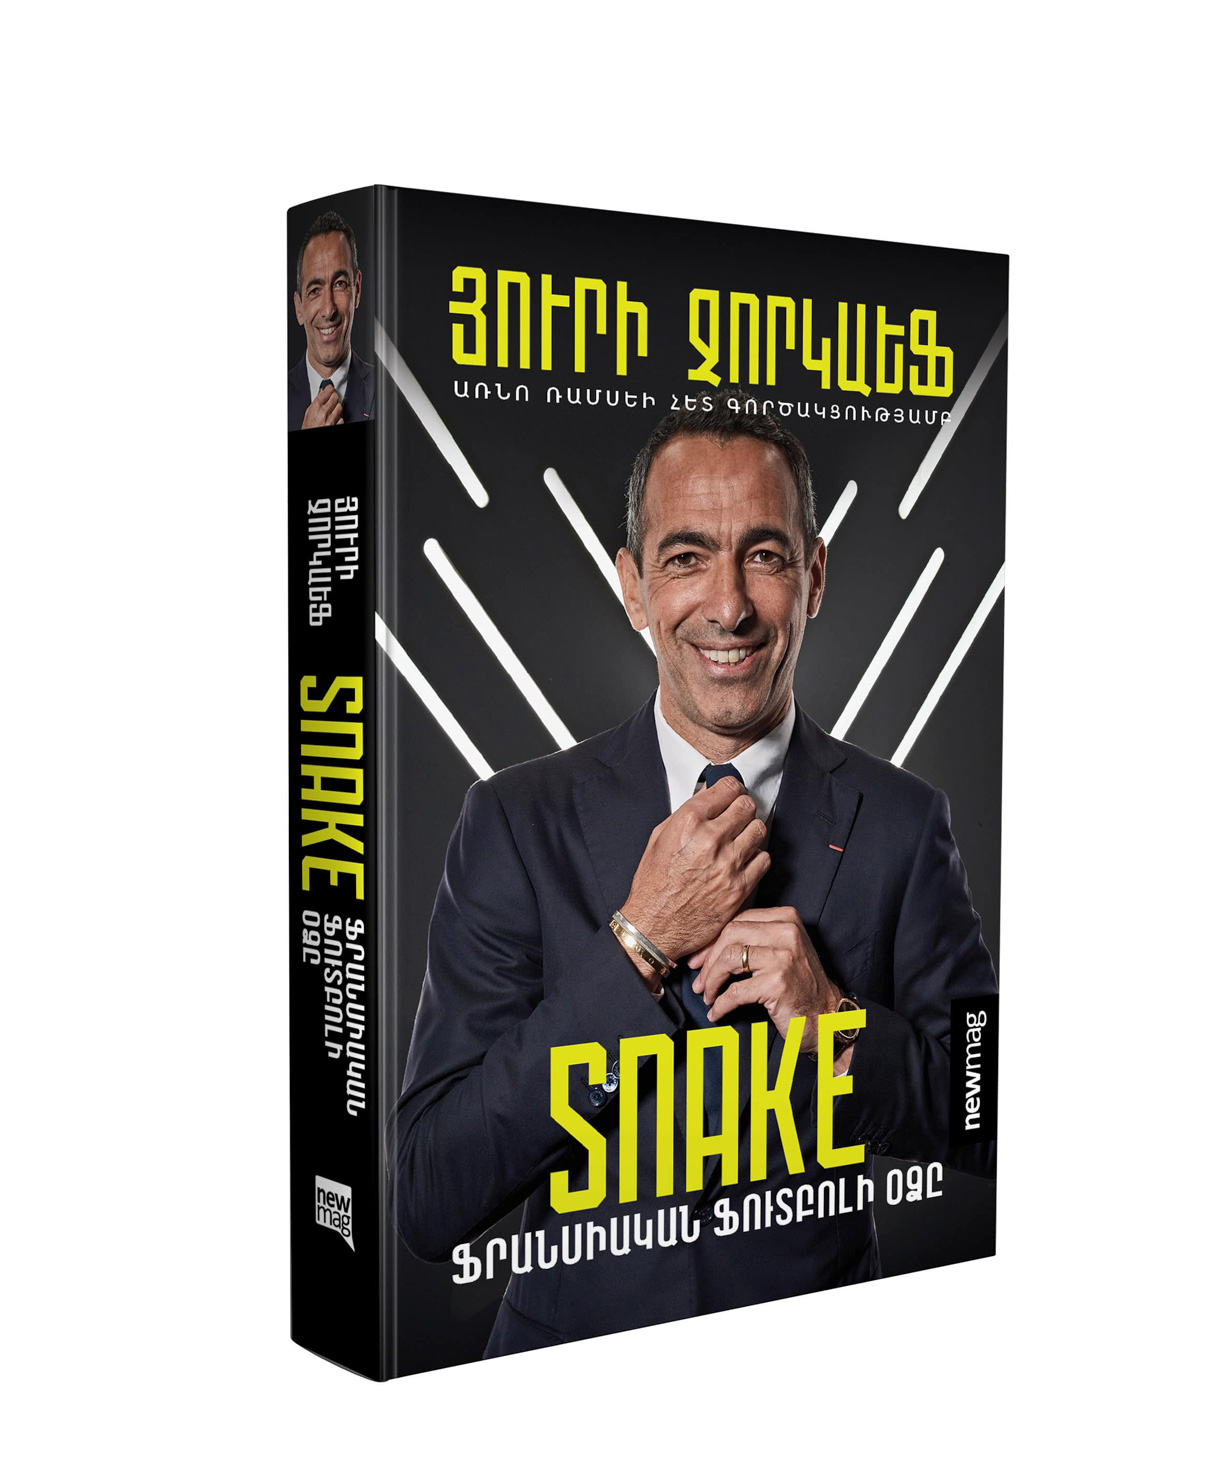 Գիրք «Snake. ֆրանսիական ֆուտբոլի օձը» Յուրի Ջորկաեֆ / հայերեն